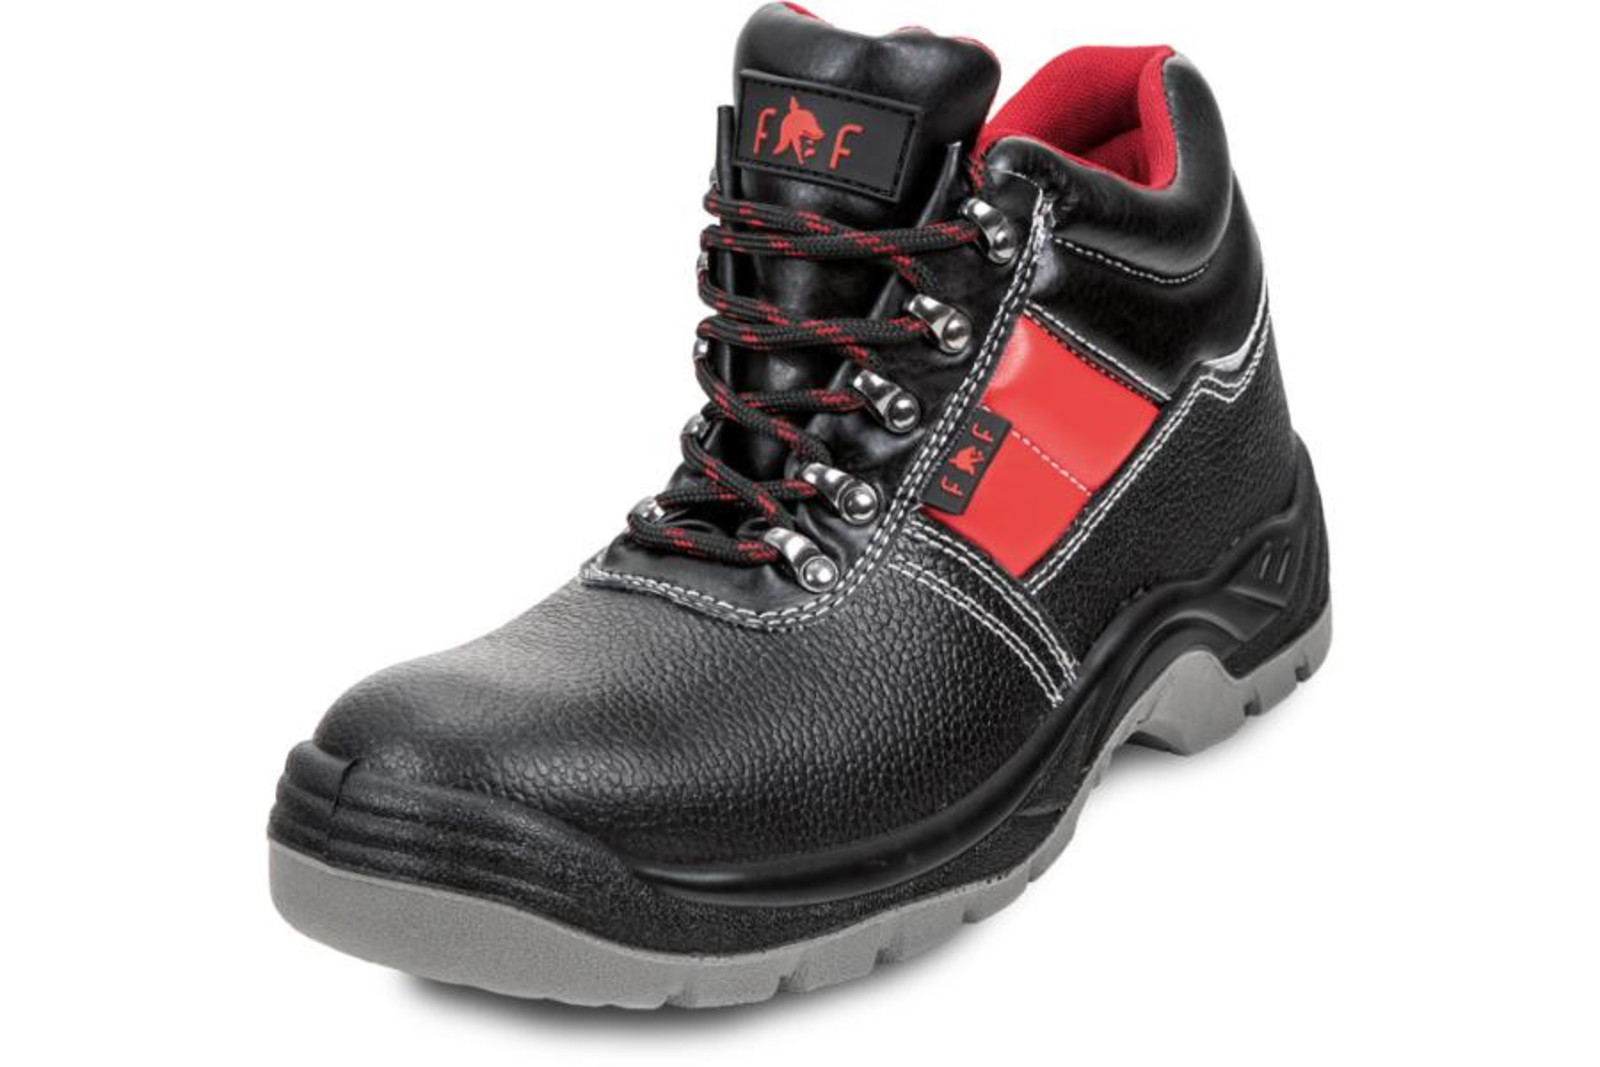 Bezpečnostná obuv SC 03-003 S3 - veľkosť: 48, farba: čierna